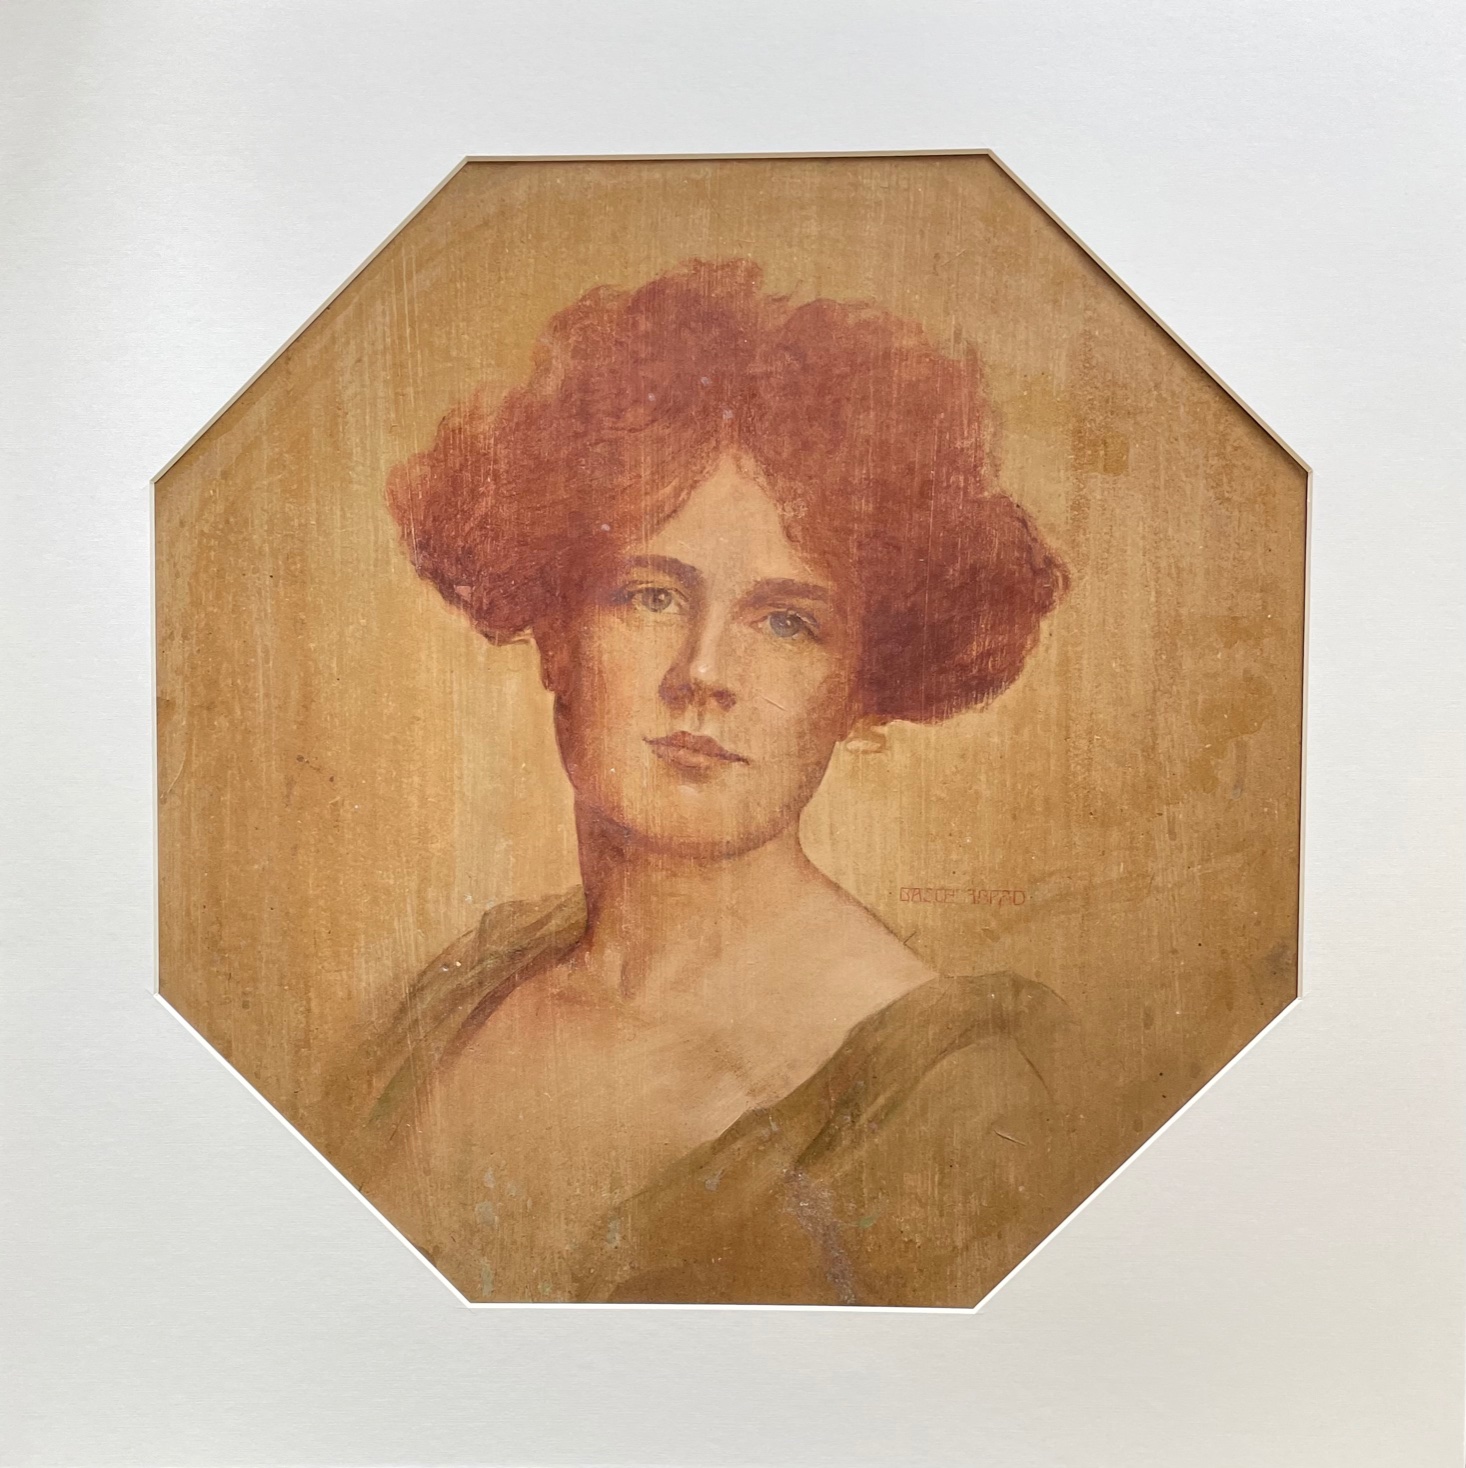 Basch, Árpád: Womans portrait